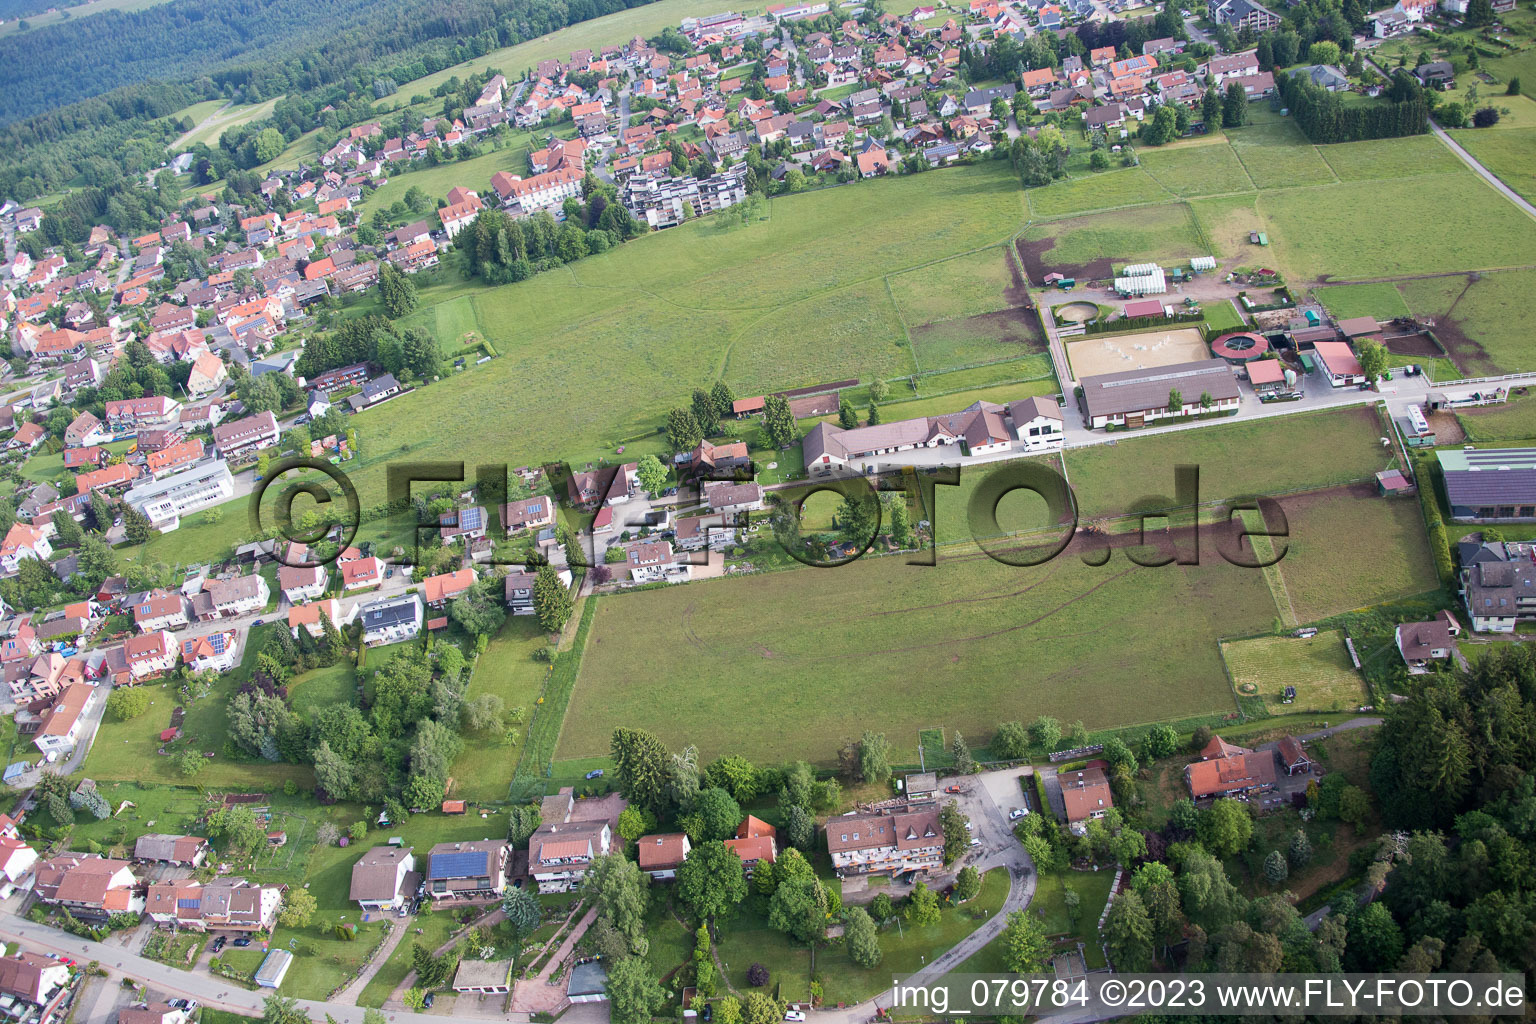 Drone recording of Stud Dobel in Dobel in the state Baden-Wuerttemberg, Germany